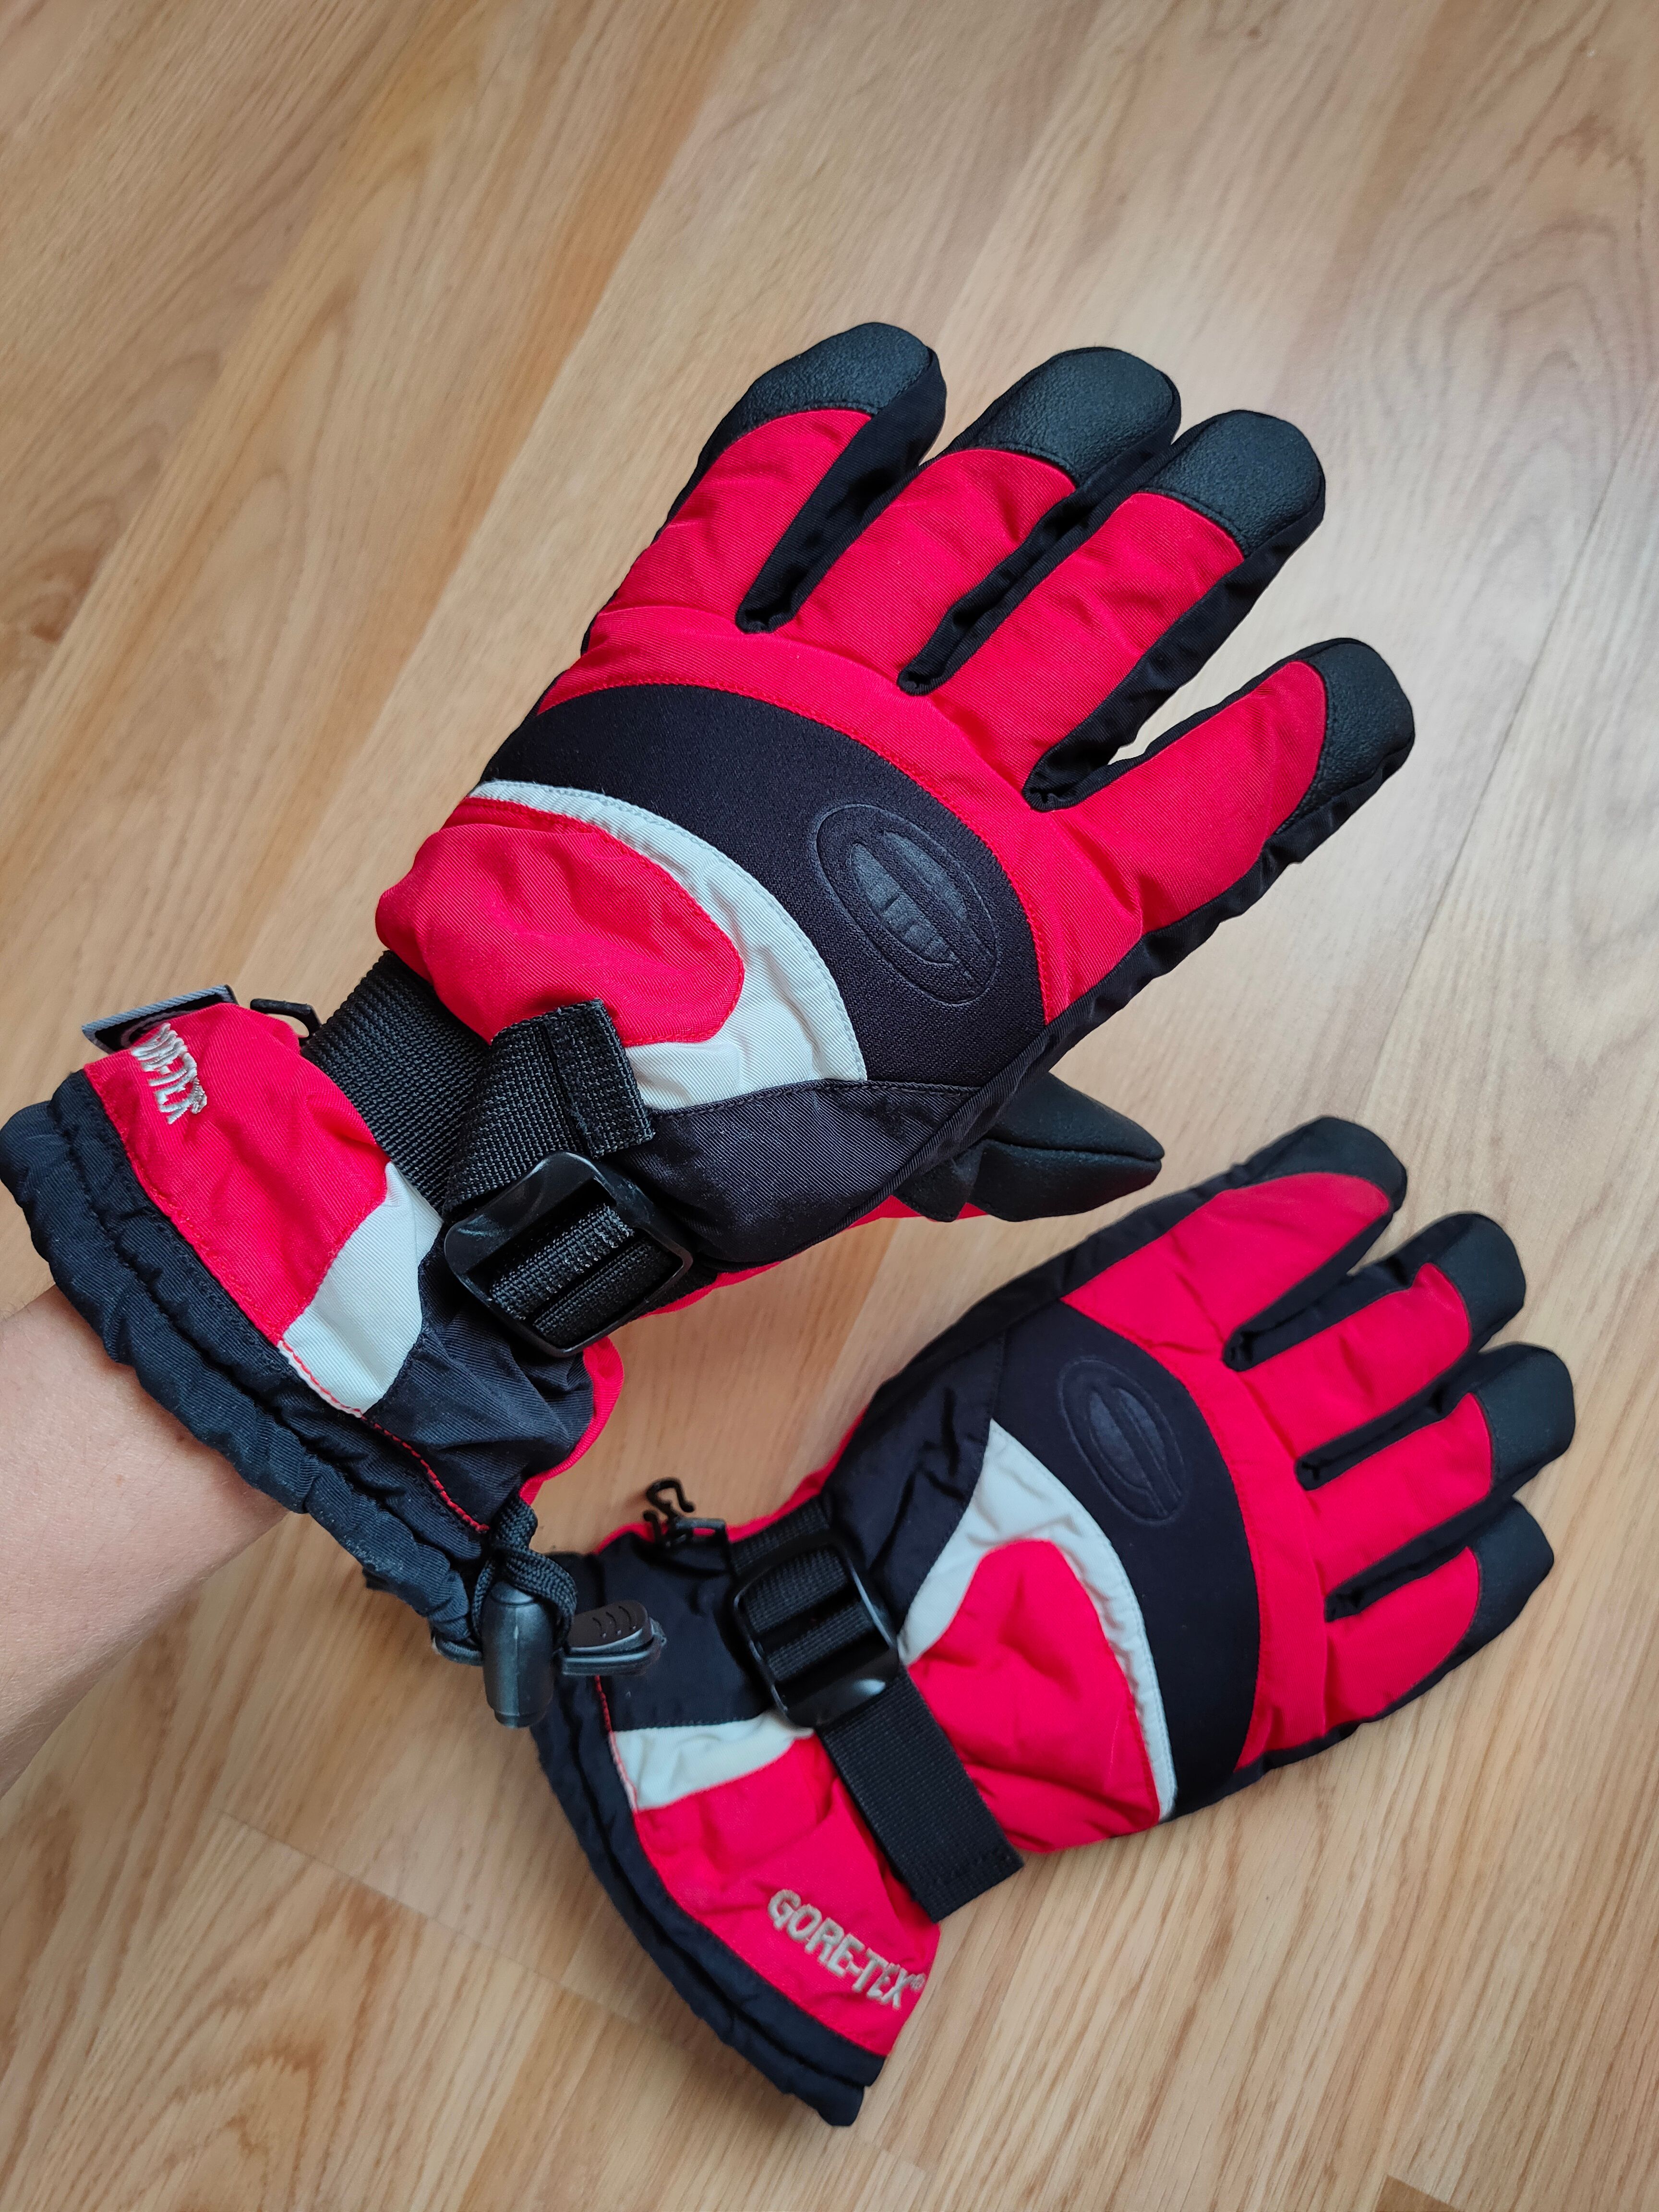 Ski Vintage Ziener Goretex Gloves Gorpcore Outdoor Ski Gloves Size ONE SIZE - 8 Thumbnail